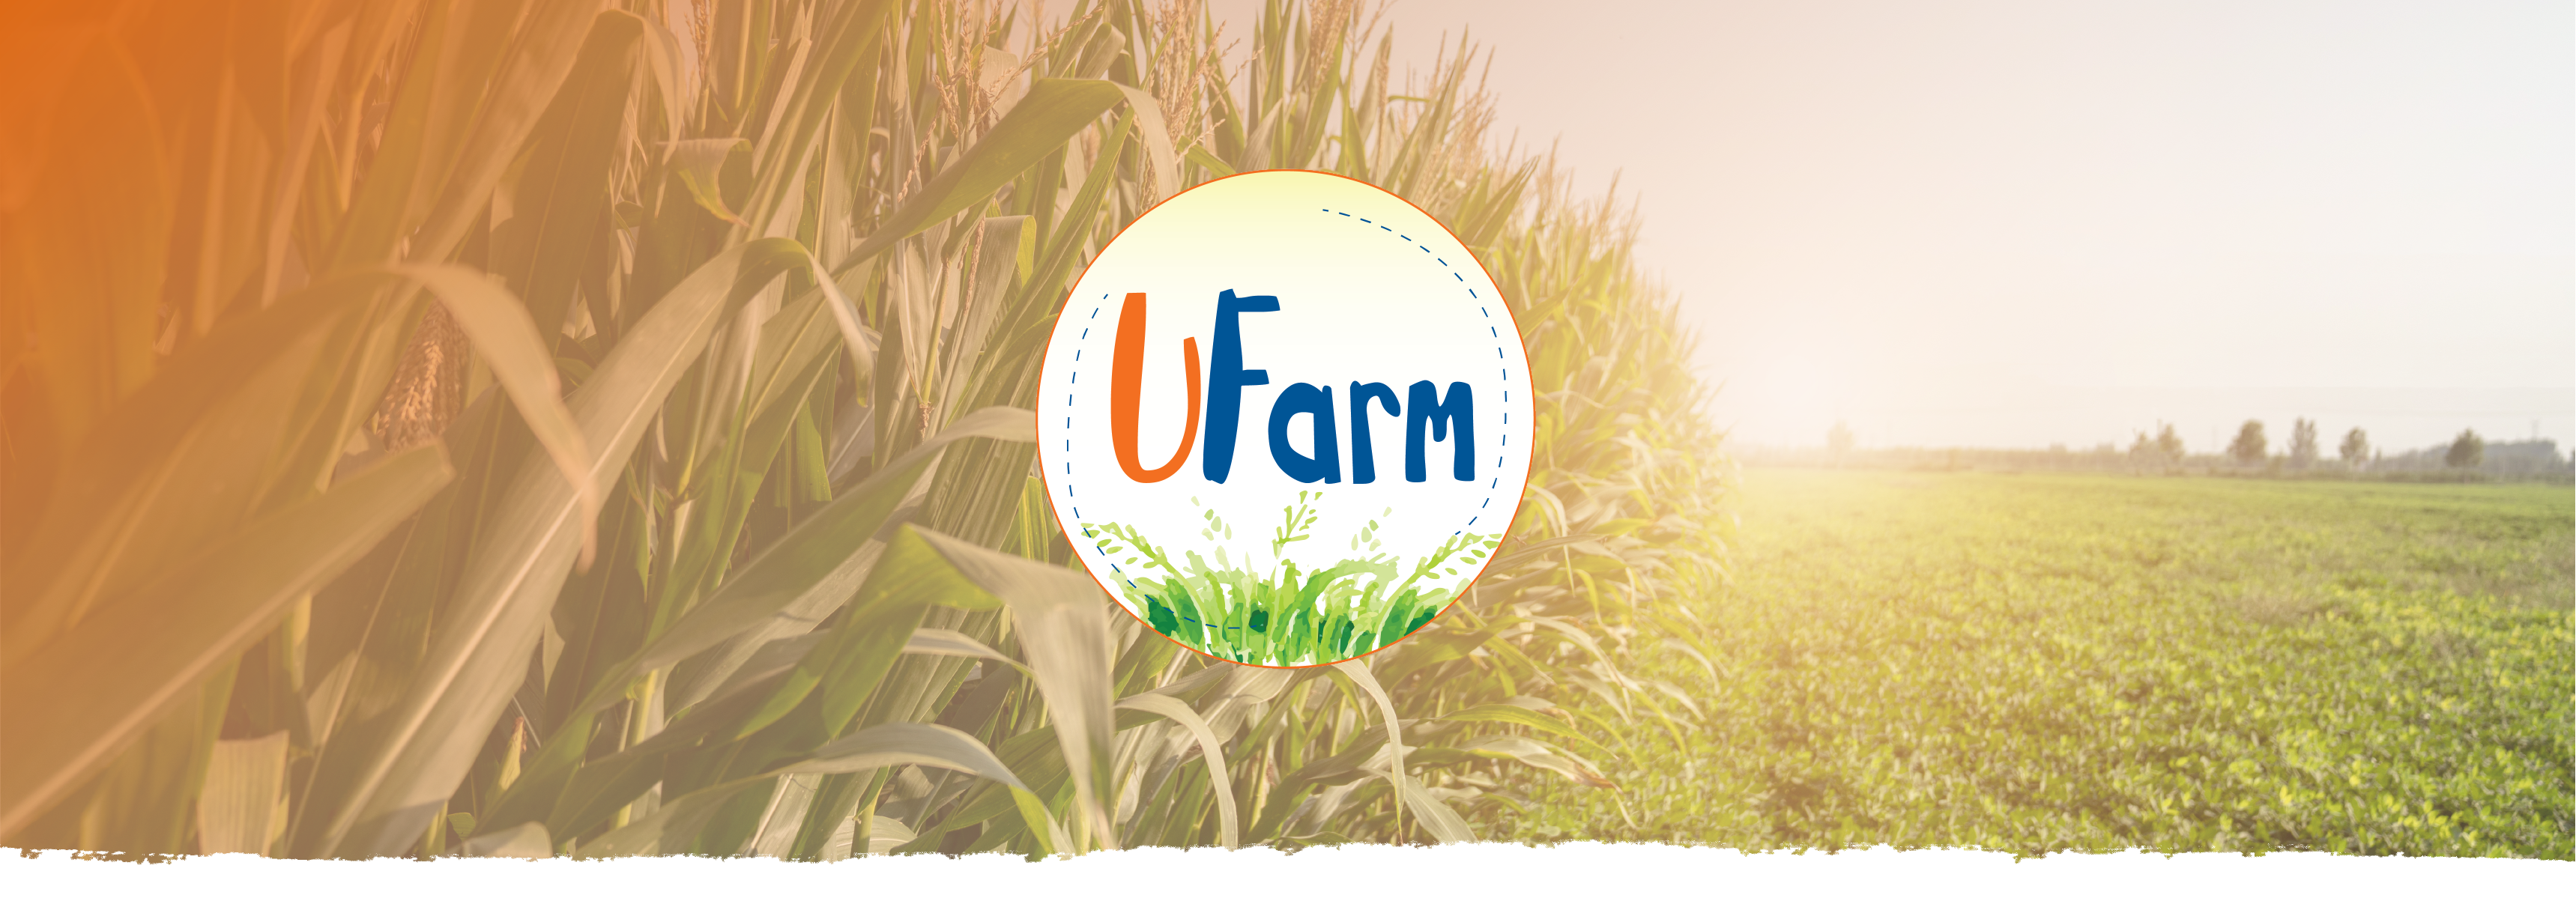 UFarm logo with cornfield